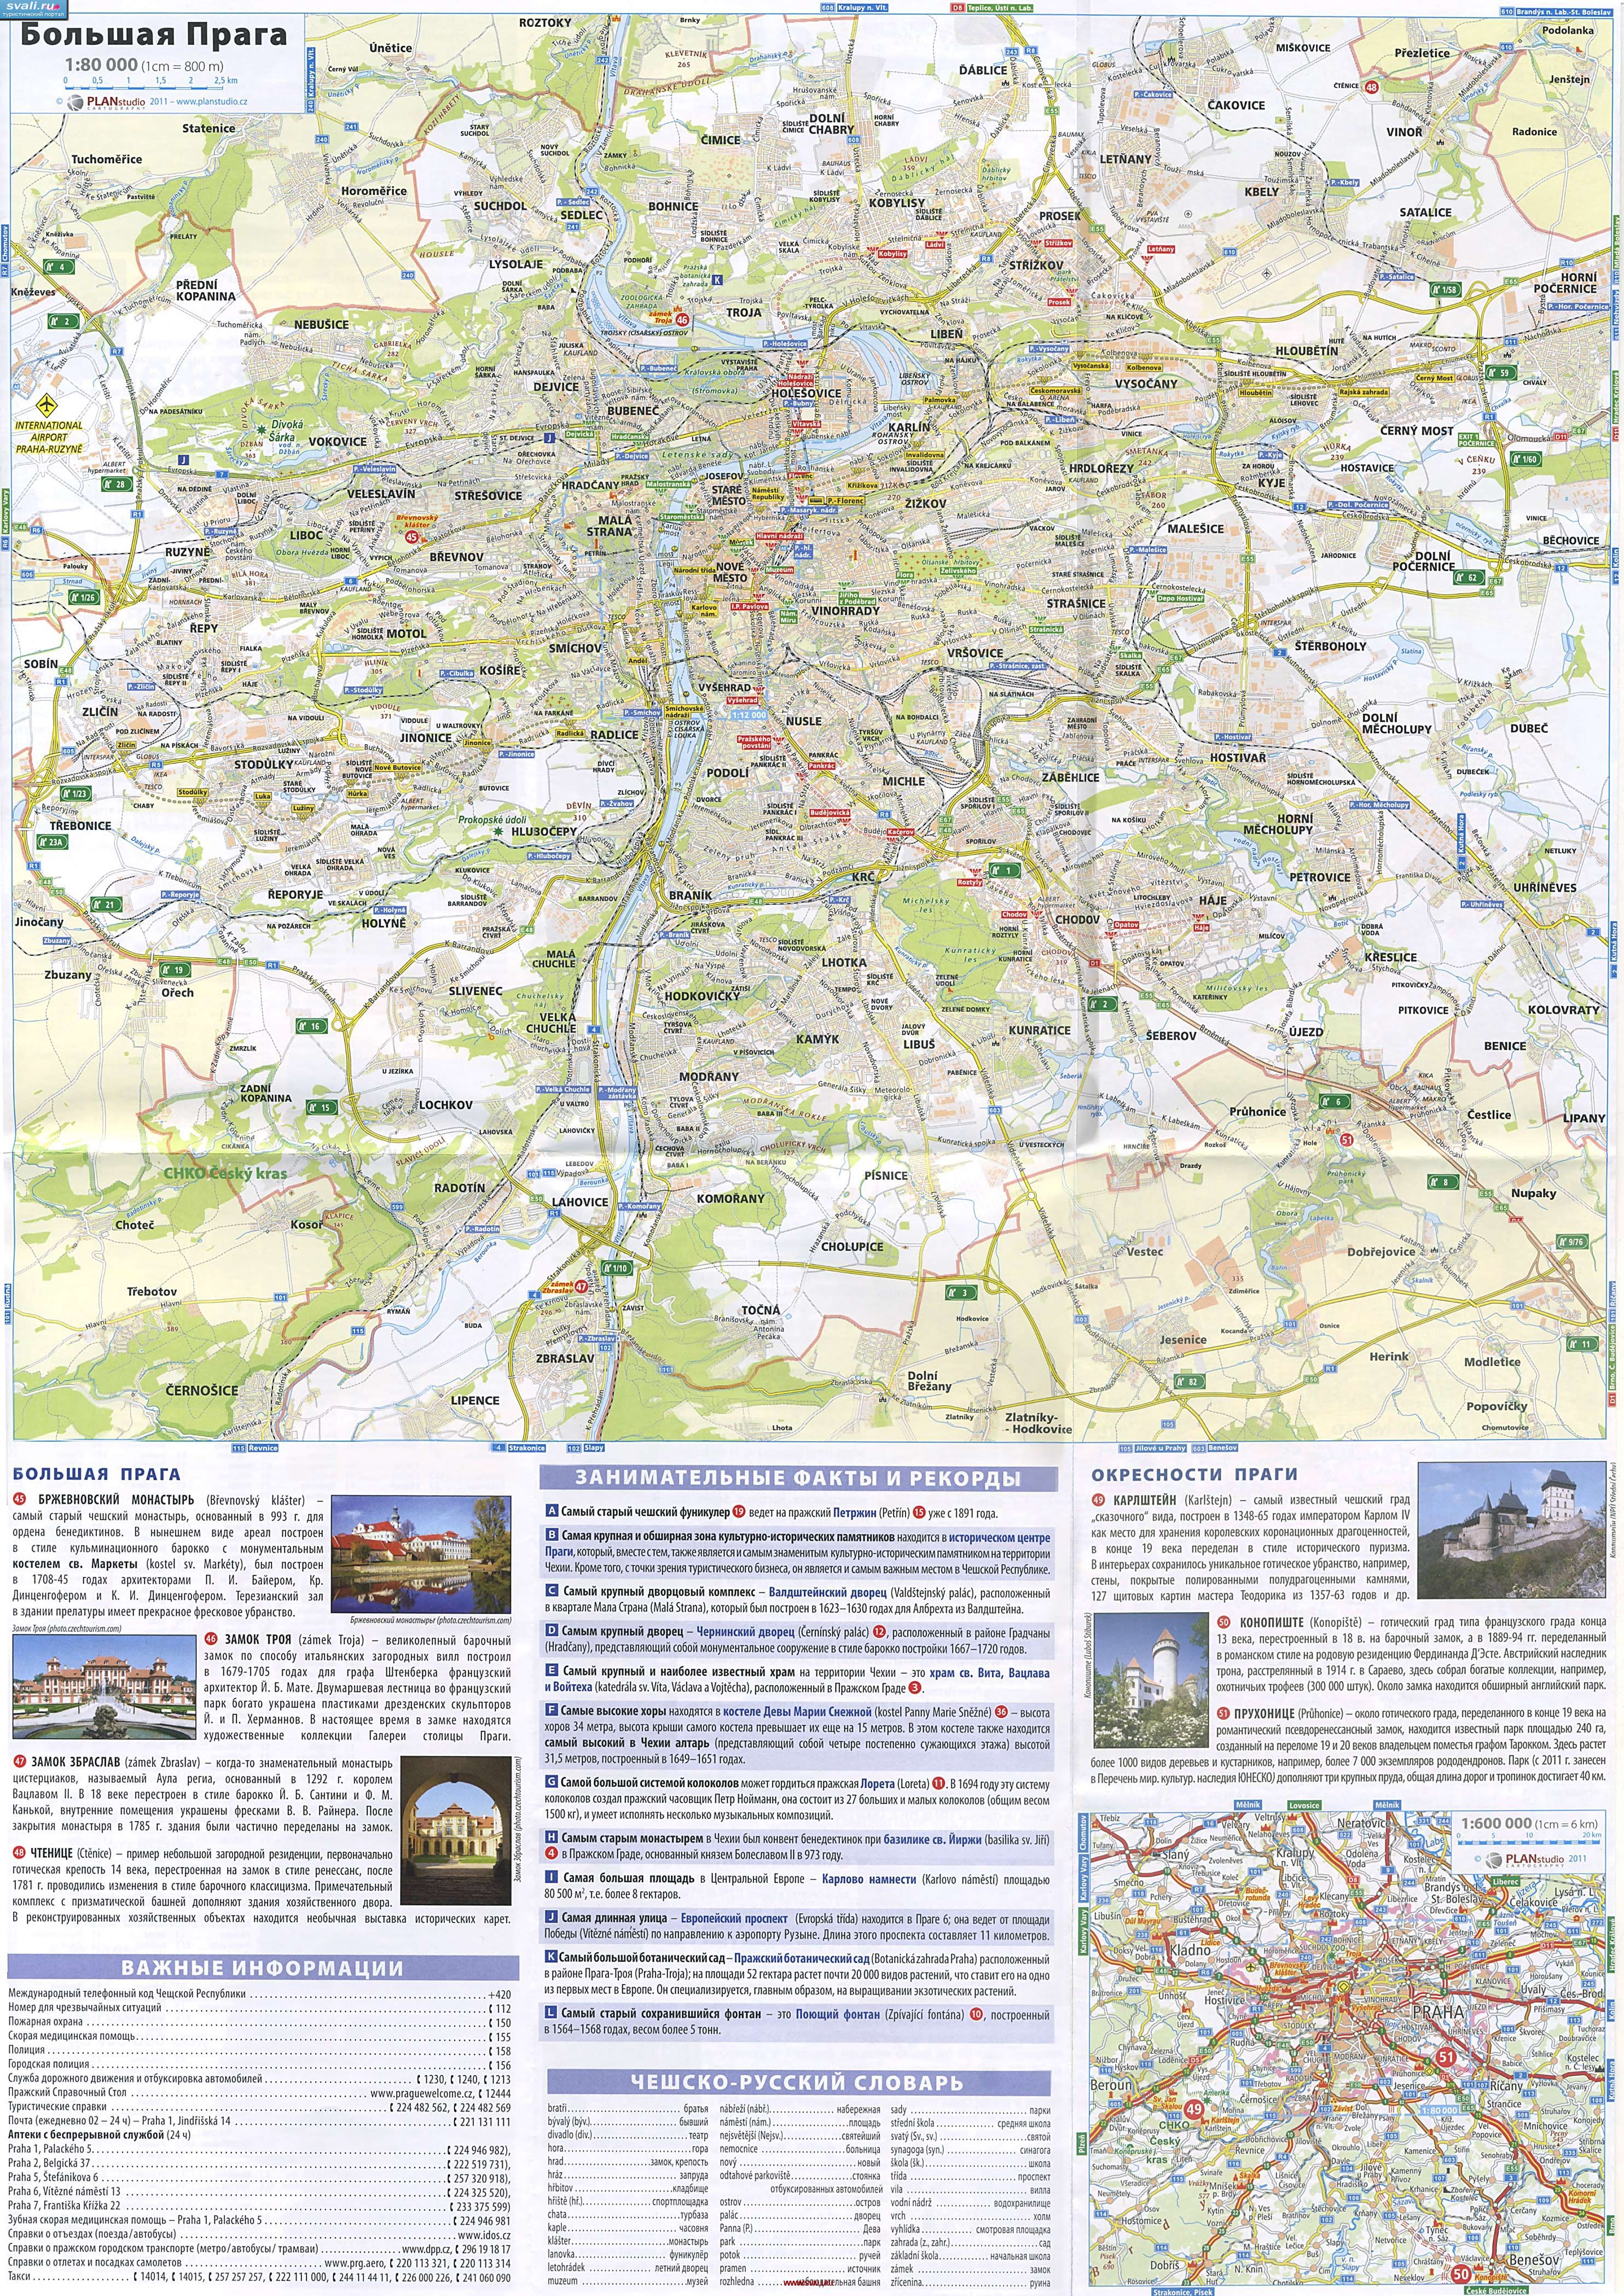 Карта Большой Праги и окресностей с указанием справочной информации нв русском языке, Чехия.